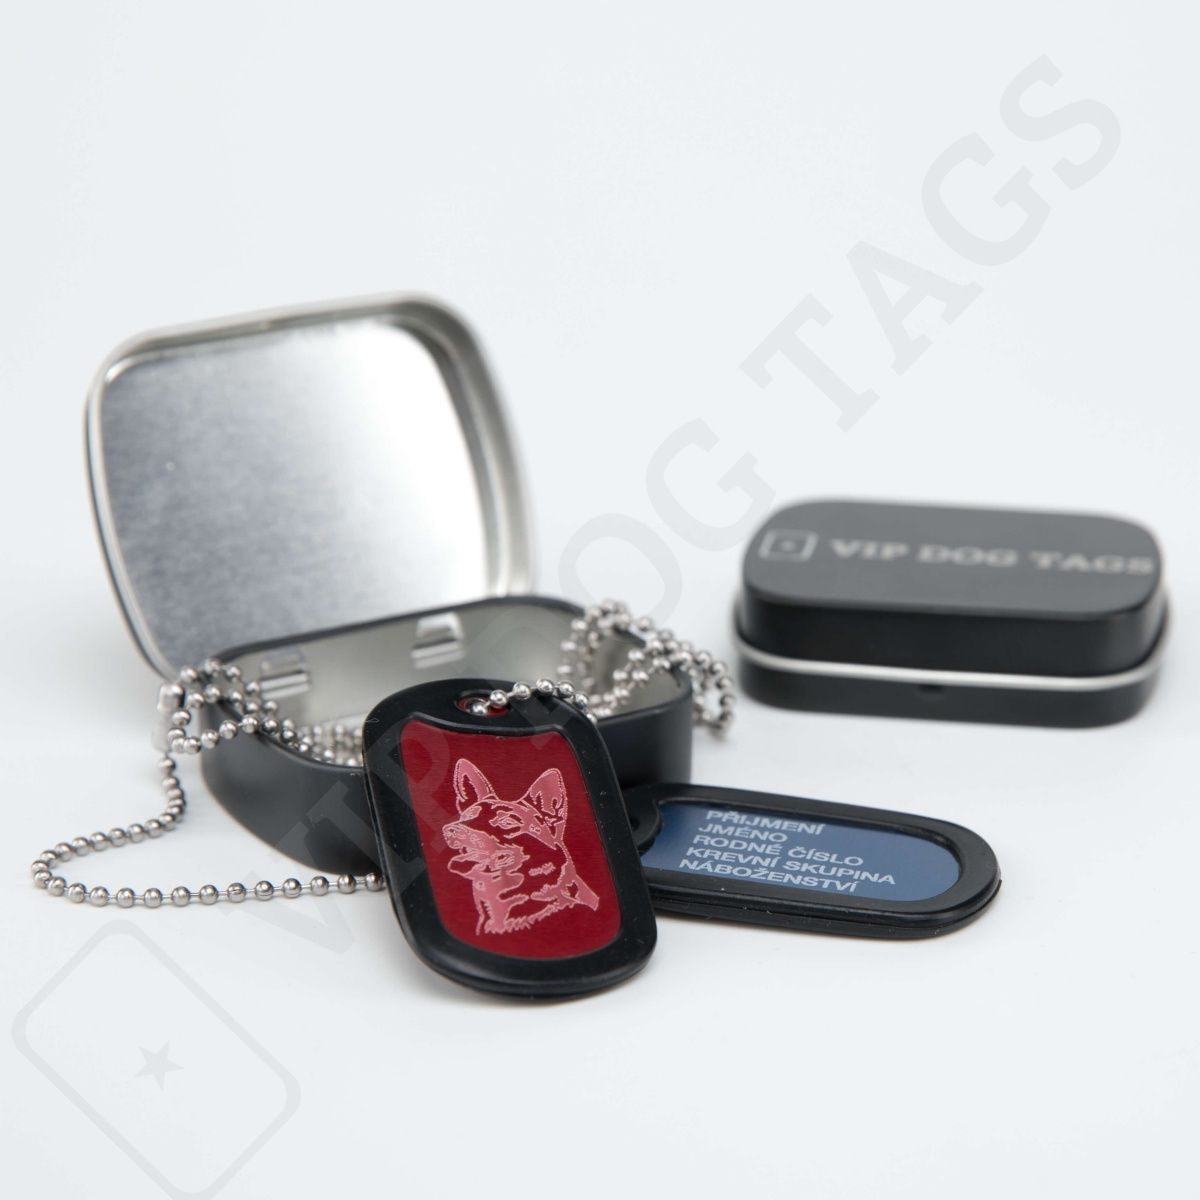 Vojenské identifikační psí známky hliníkové na krk - různé barvy, US Military Dog Tags Set Aluminium - 345642